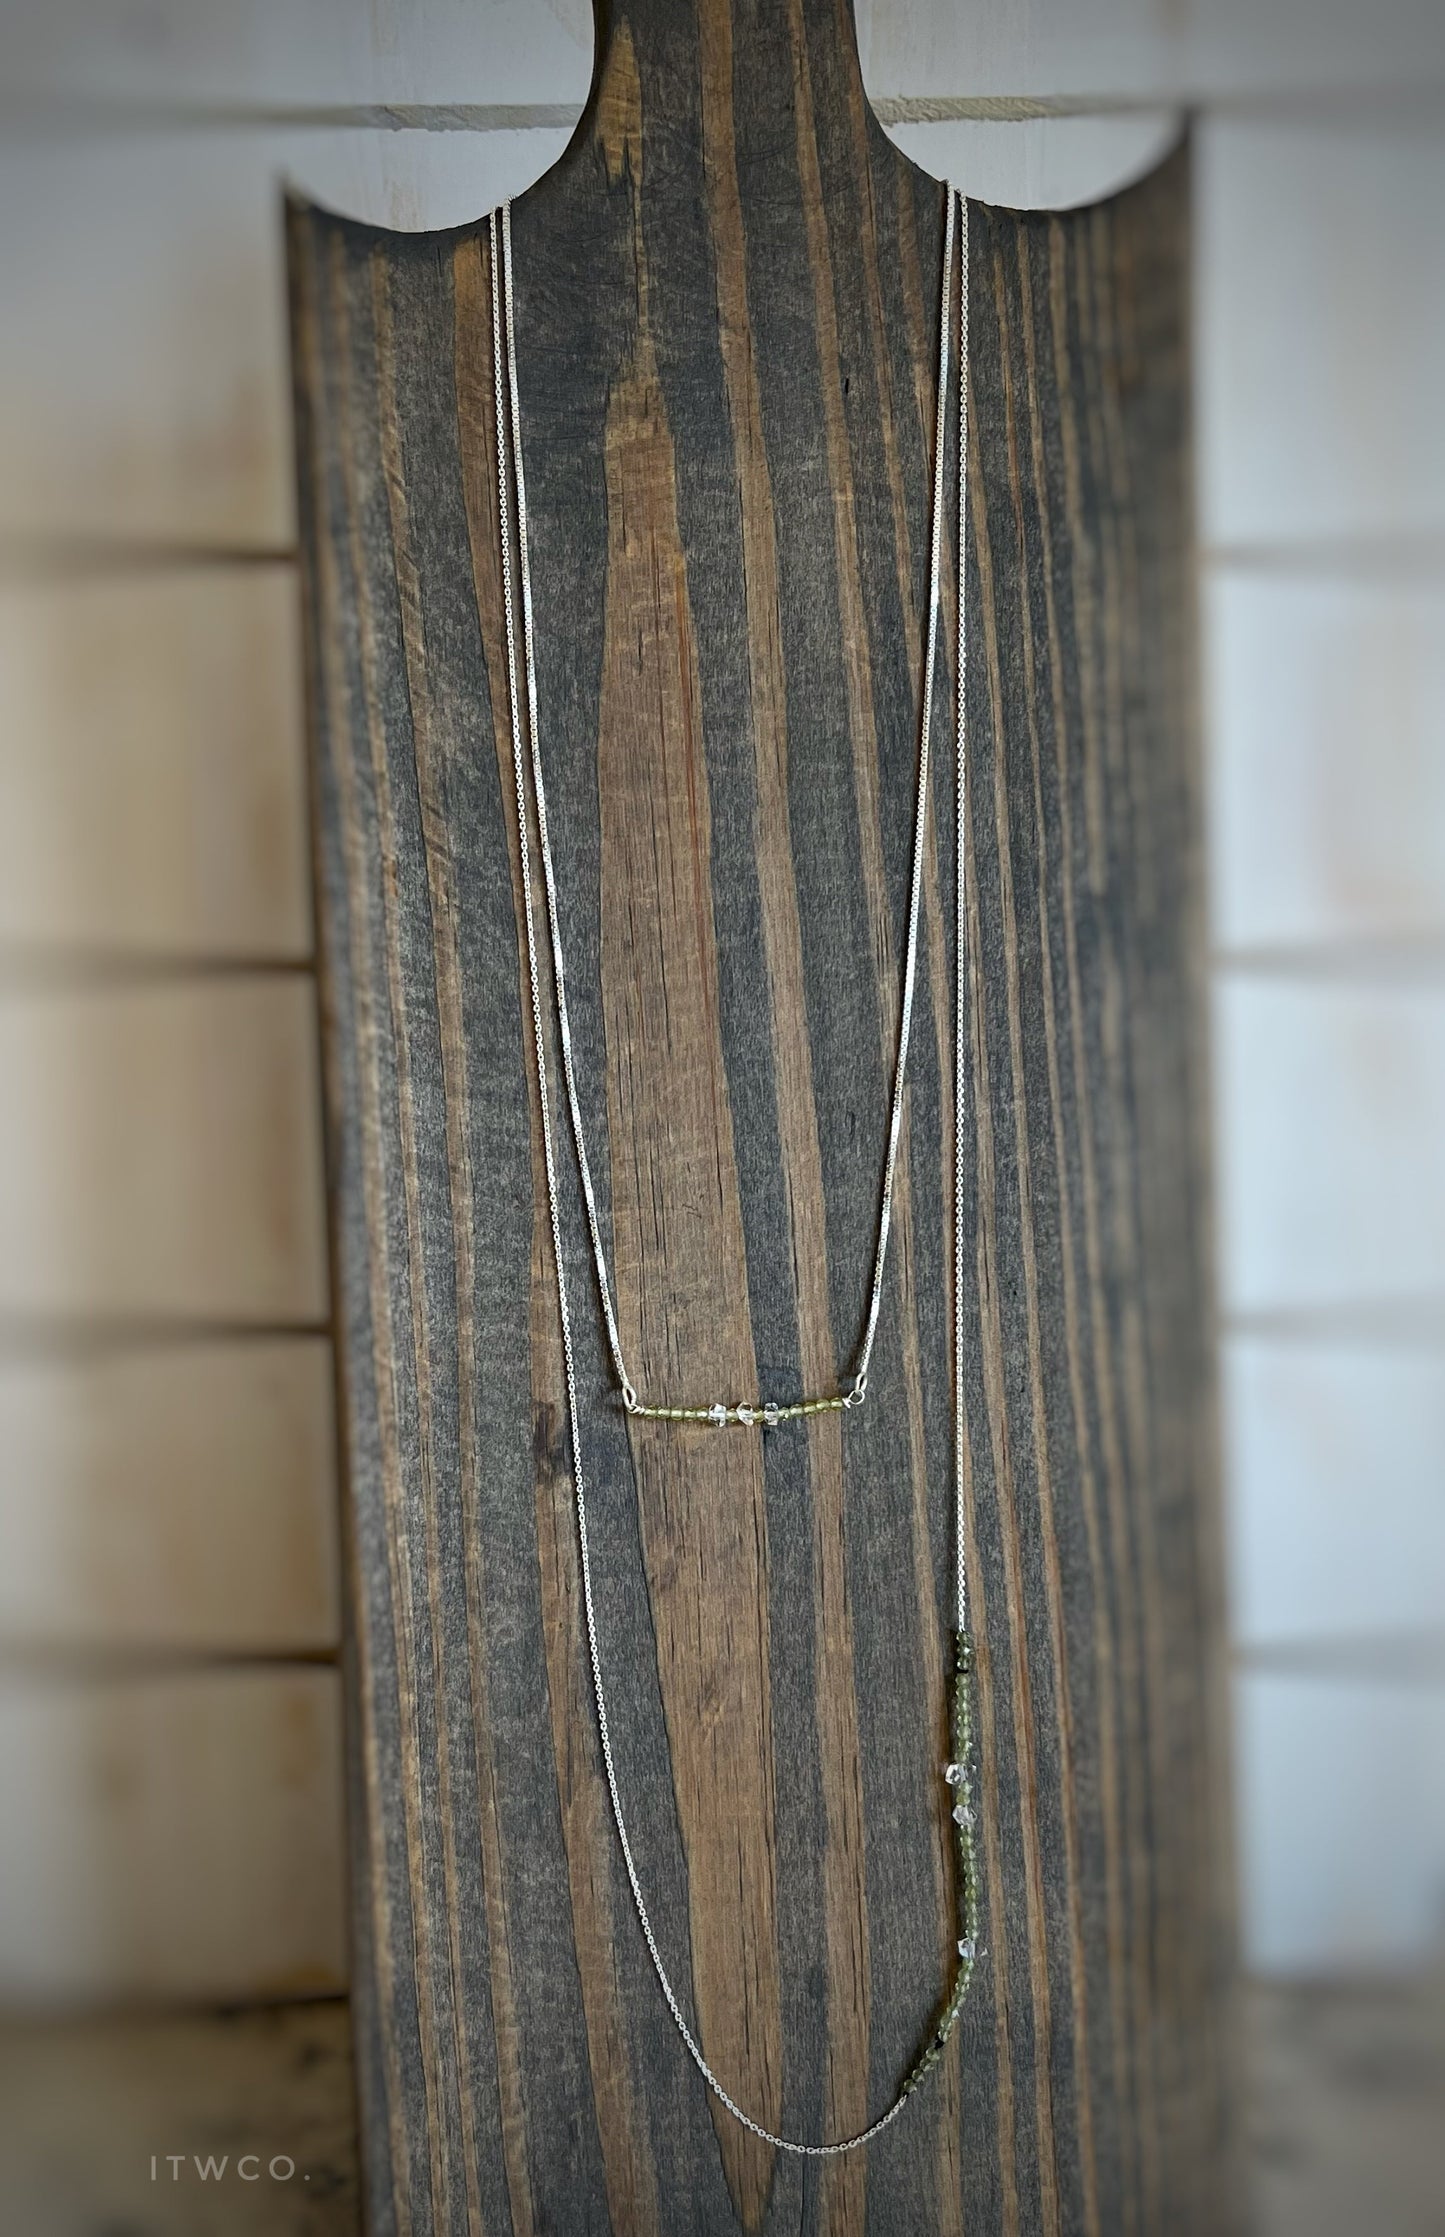 Peridot + Herkimer Diamond Long Necklace